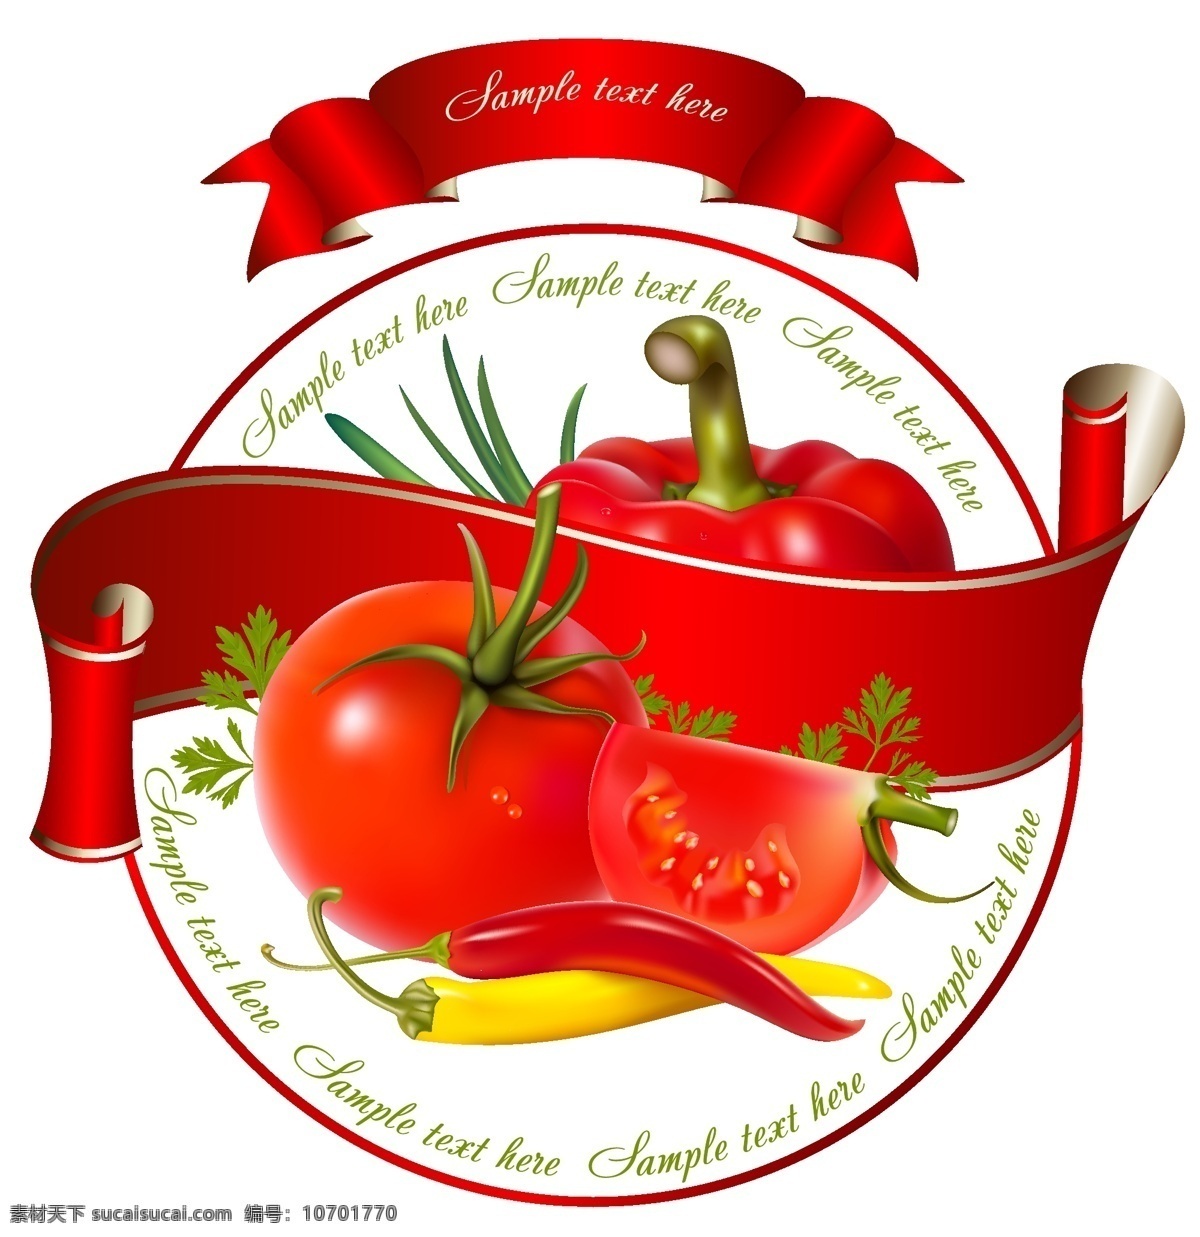 标签 标签贴 大蒜 红色 青椒 生物世界 蔬菜 水果 西红柿 新鲜 果蔬 贴 矢量 模板下载 淘宝素材 淘宝促销标签